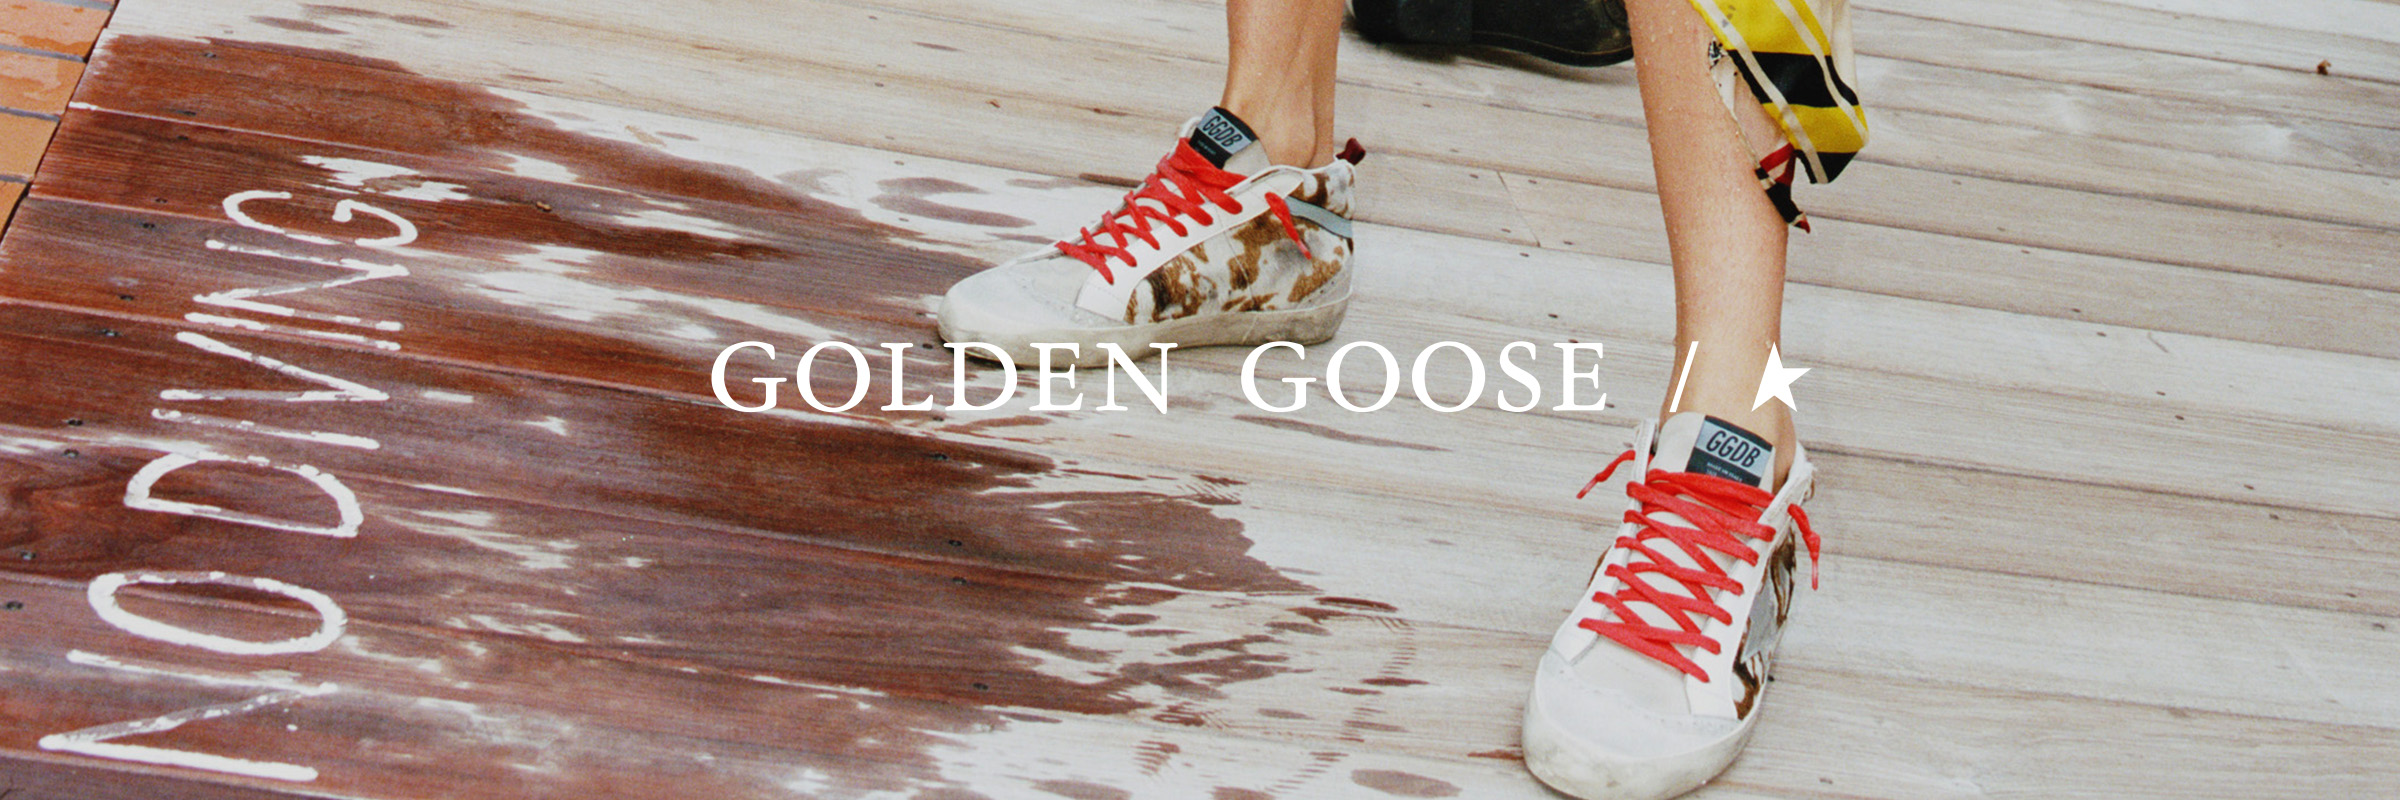 goldengoose-banner-cta